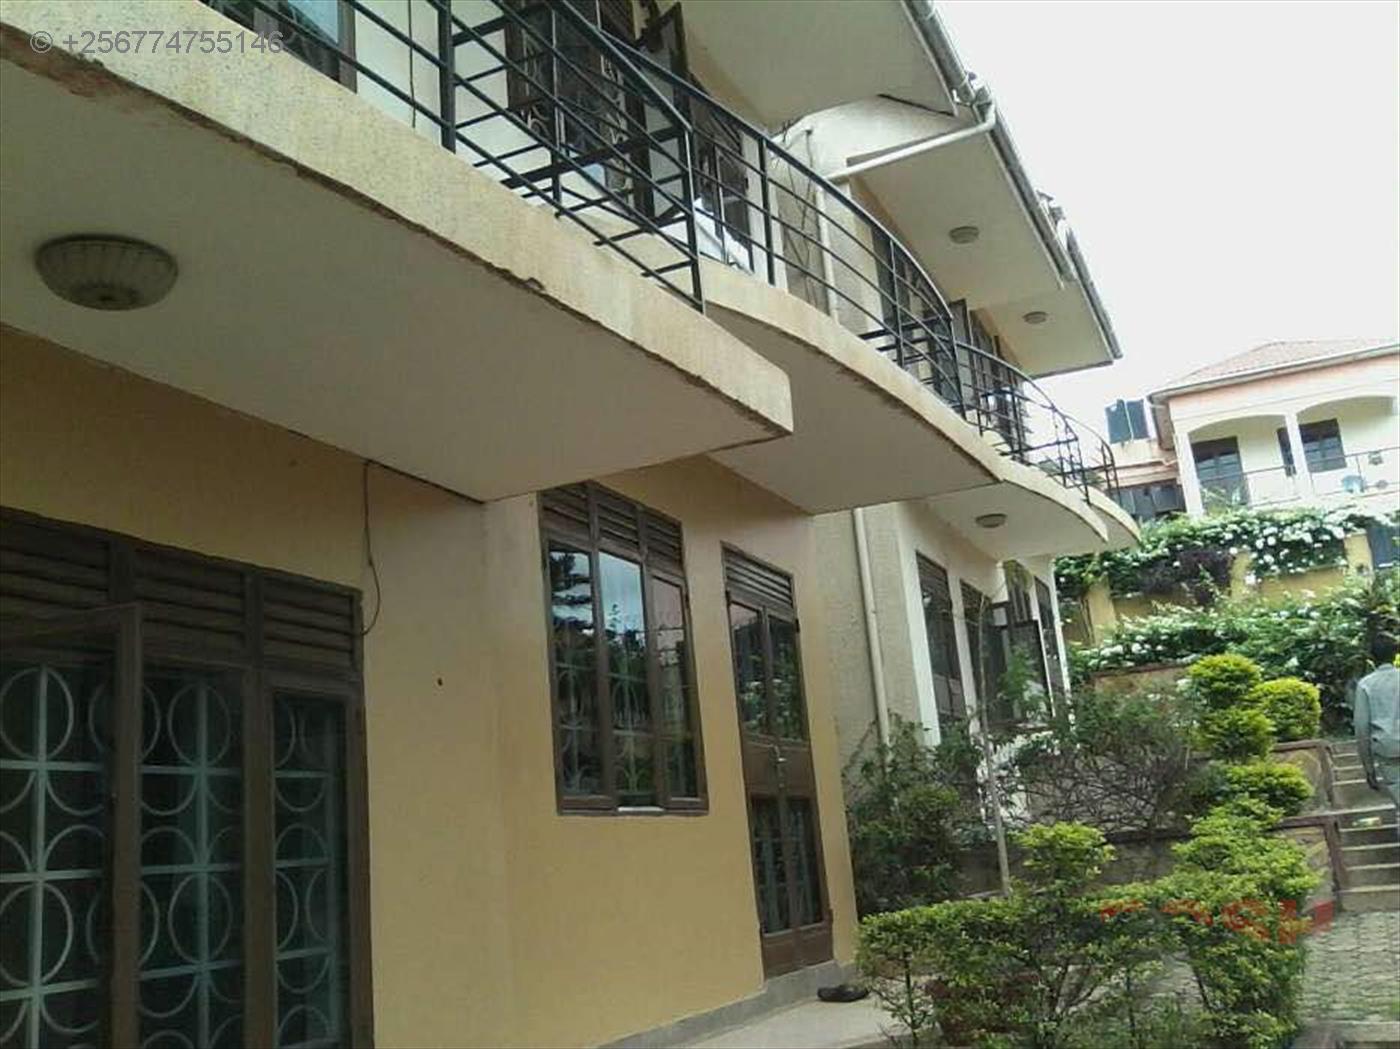 3 Bedroom Duplex For Rent In Naalya Kampala Code 22854